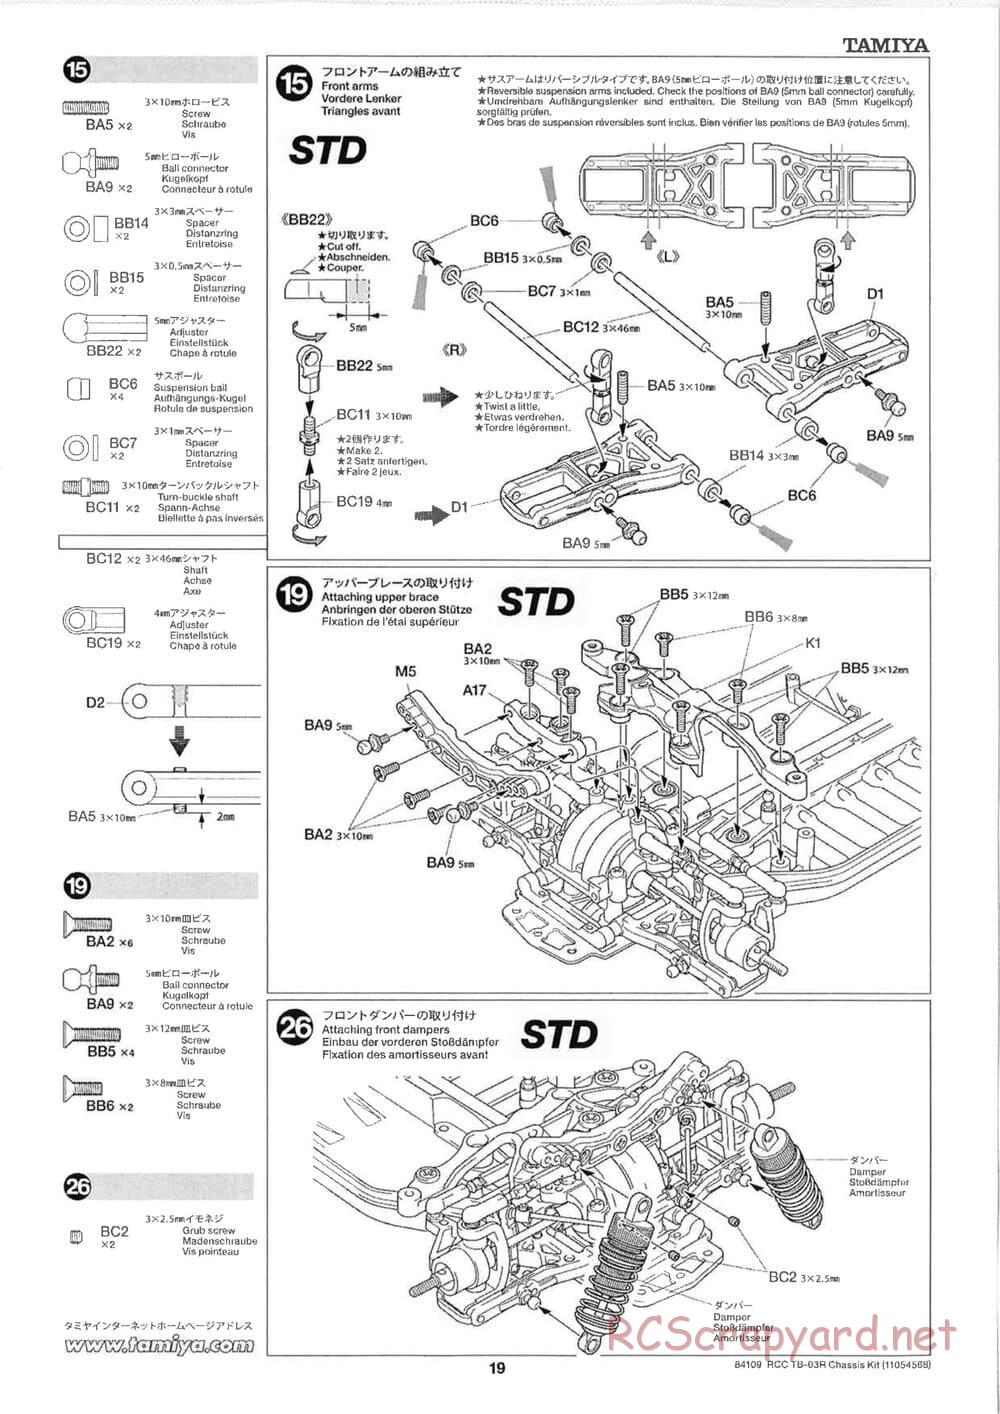 Tamiya - TB-03R Chassis - Manual - Page 19